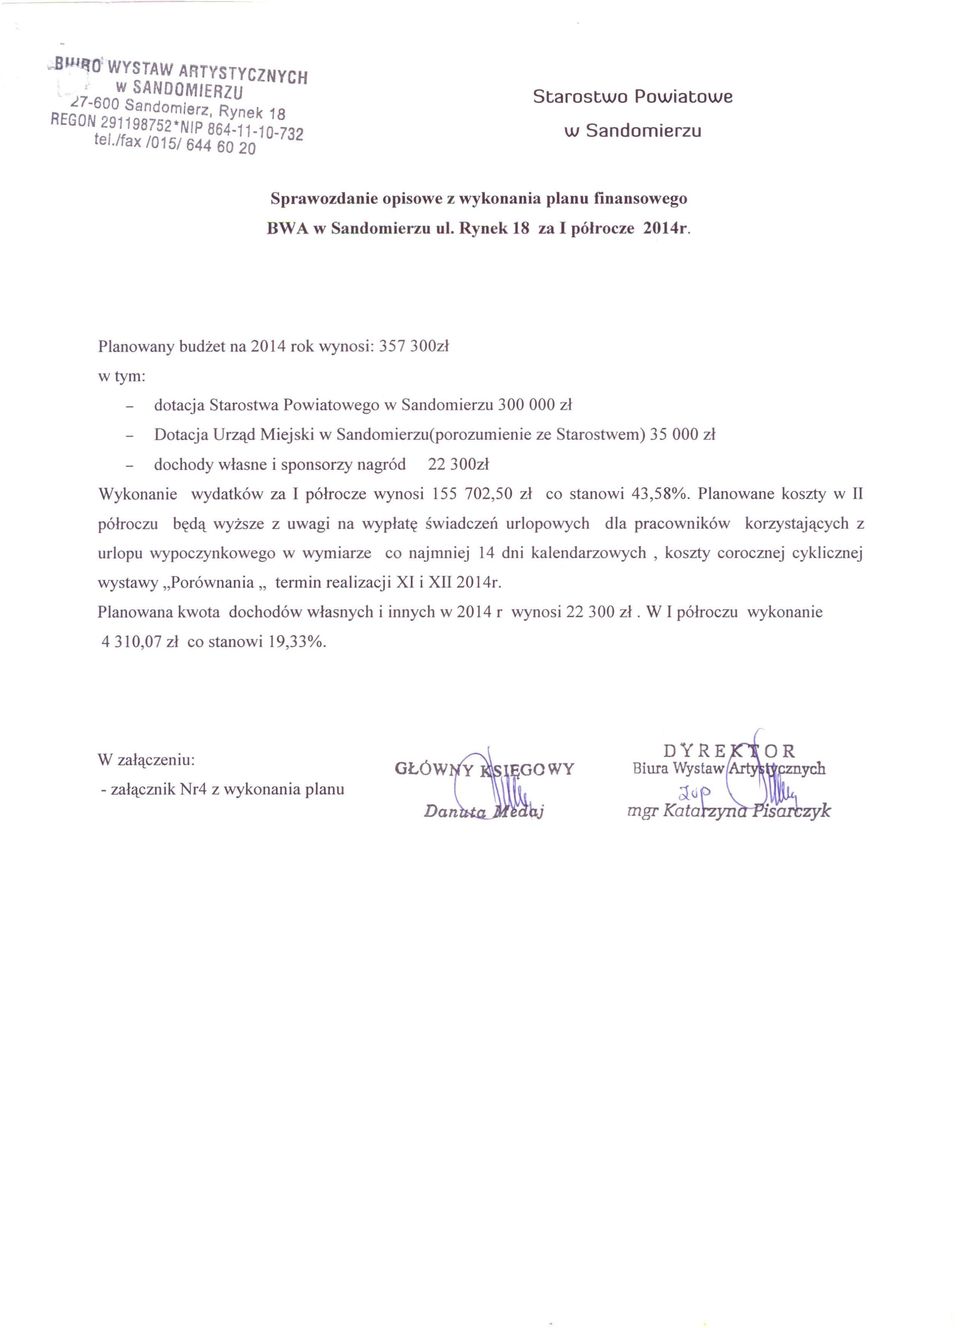 Planowany budżet na 2014 rok wynosi: 357 300zł w tym: dotacja Starostwa Powiatowego w Sandomierzu 300 000 zł Dotacja Urząd Miejski w Sandomierzu(porozumienie ze Starostwem) 35 000 zł dochody własne i